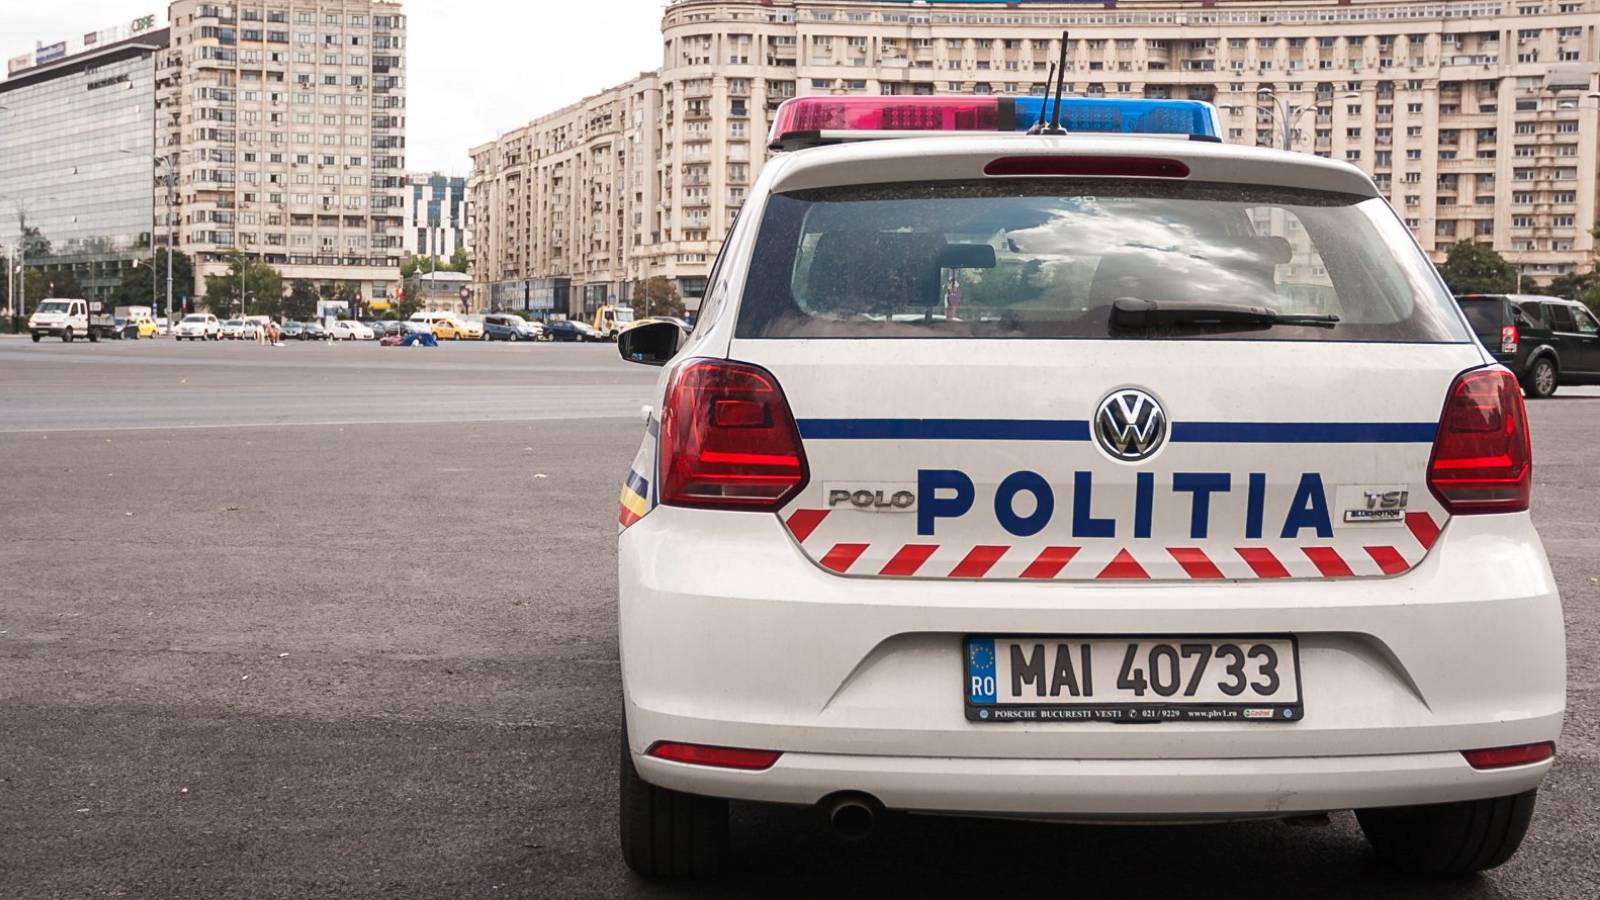 Rumänska polisens orderplacering